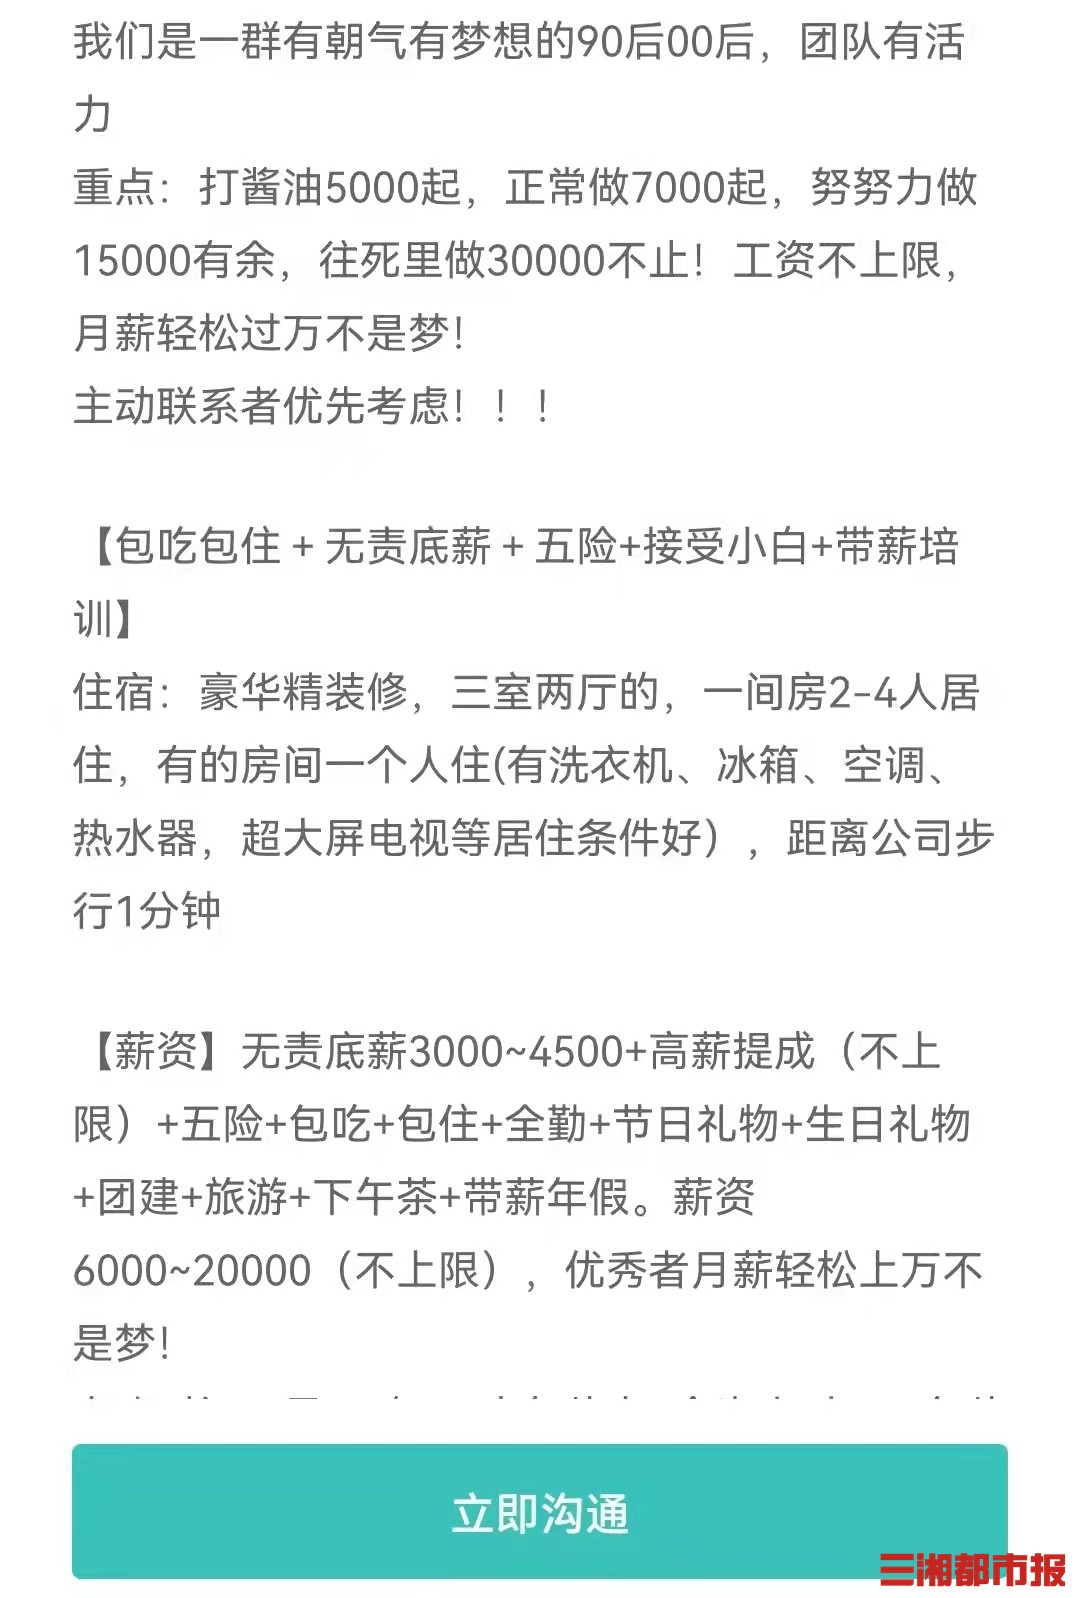 招聘网络_徐州200余家复工企业网络招聘时间截至4月30日